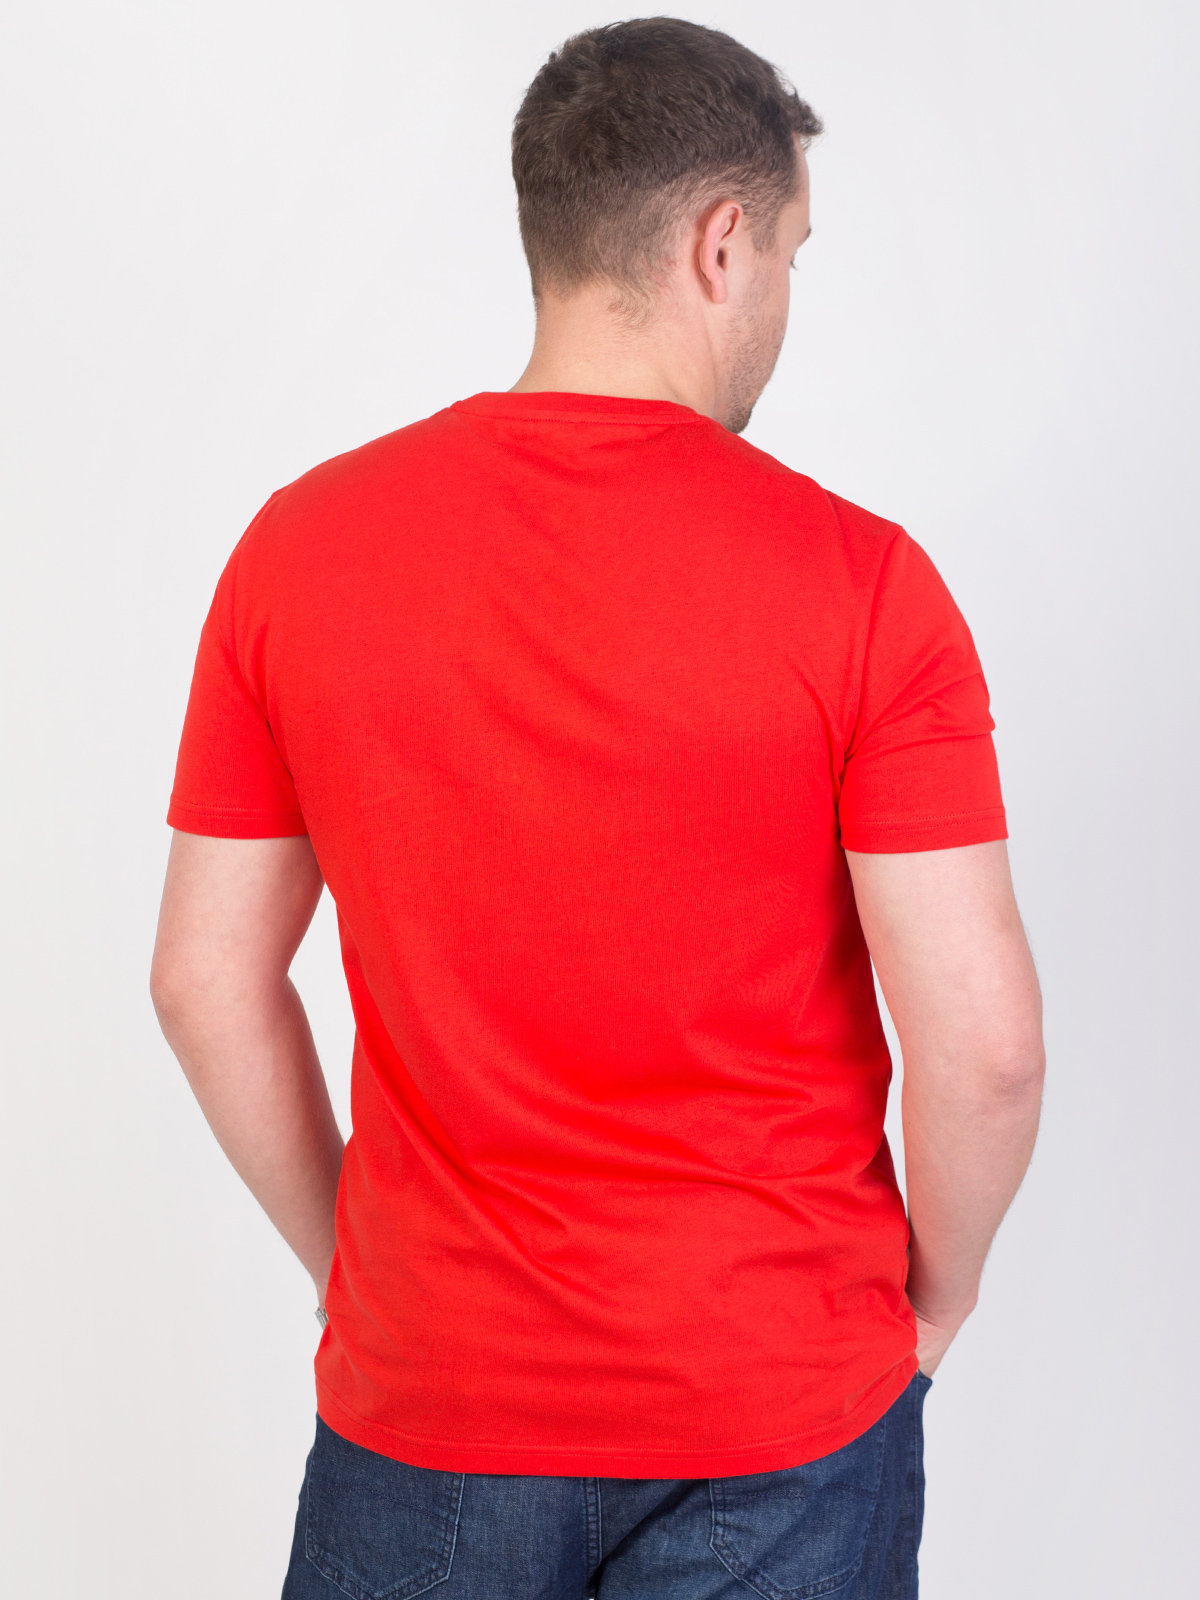 Κόκκινο μπλουζάκι με τύπωμα adventure - 96418 € 16.31 img4